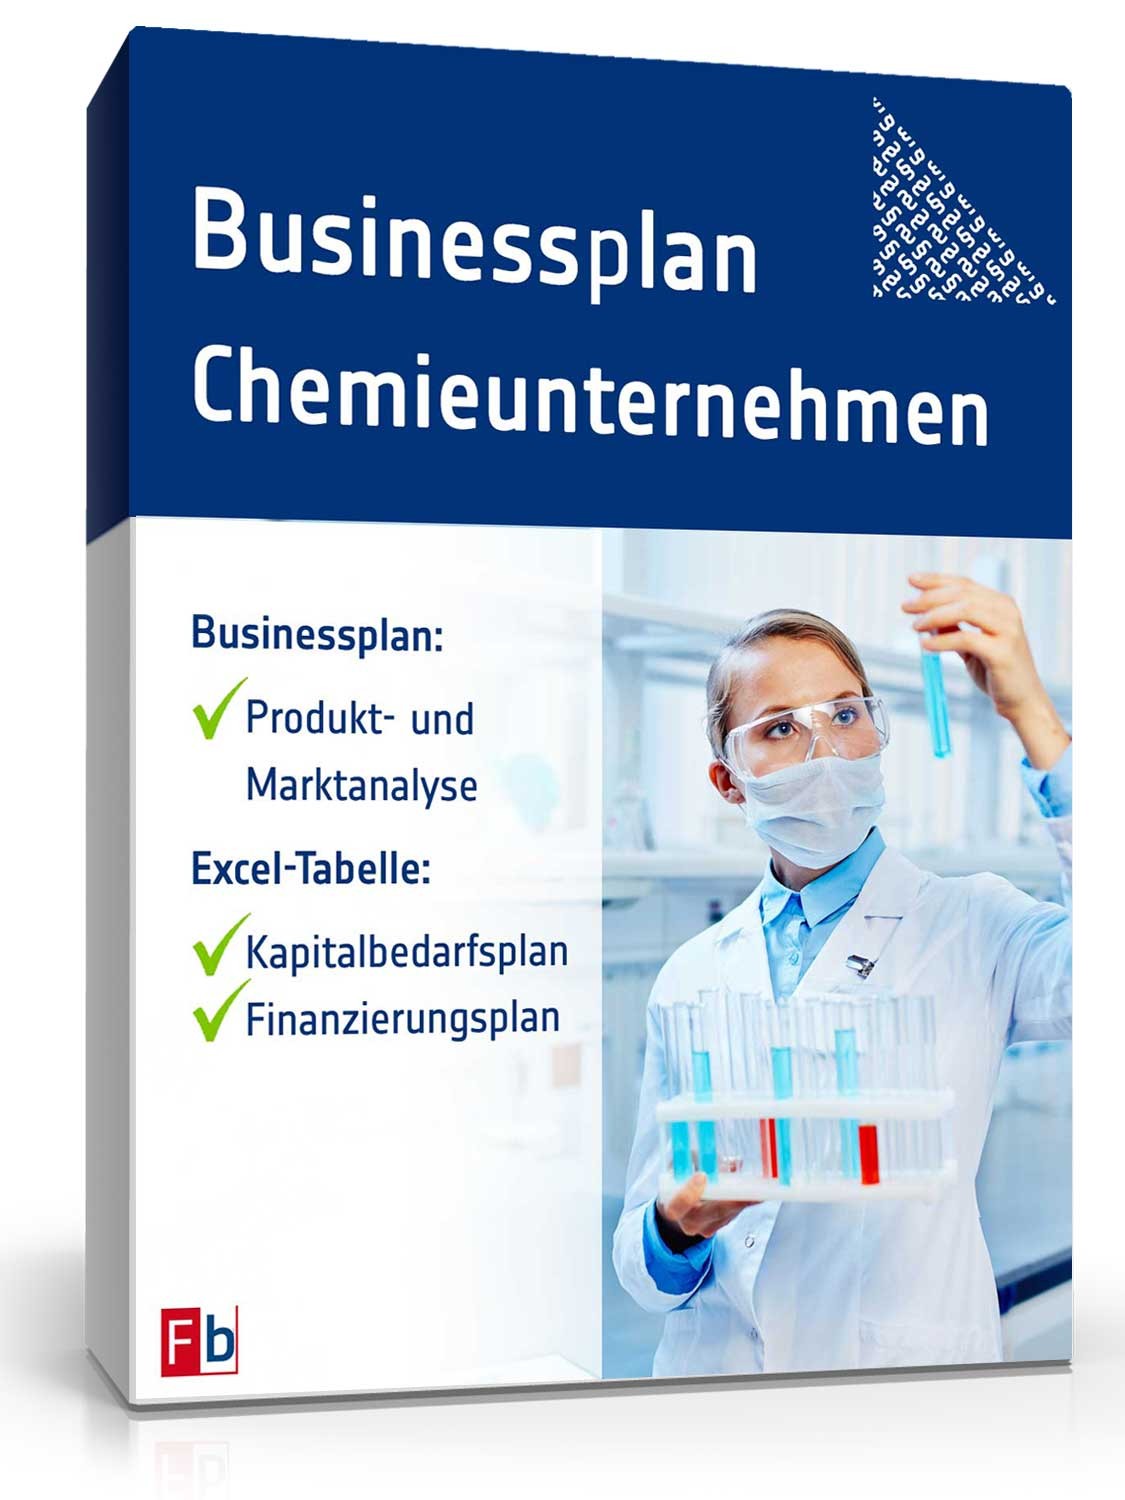 Hauptbild des Produkts: Businessplan Chemielabor/Chemieunternehmen